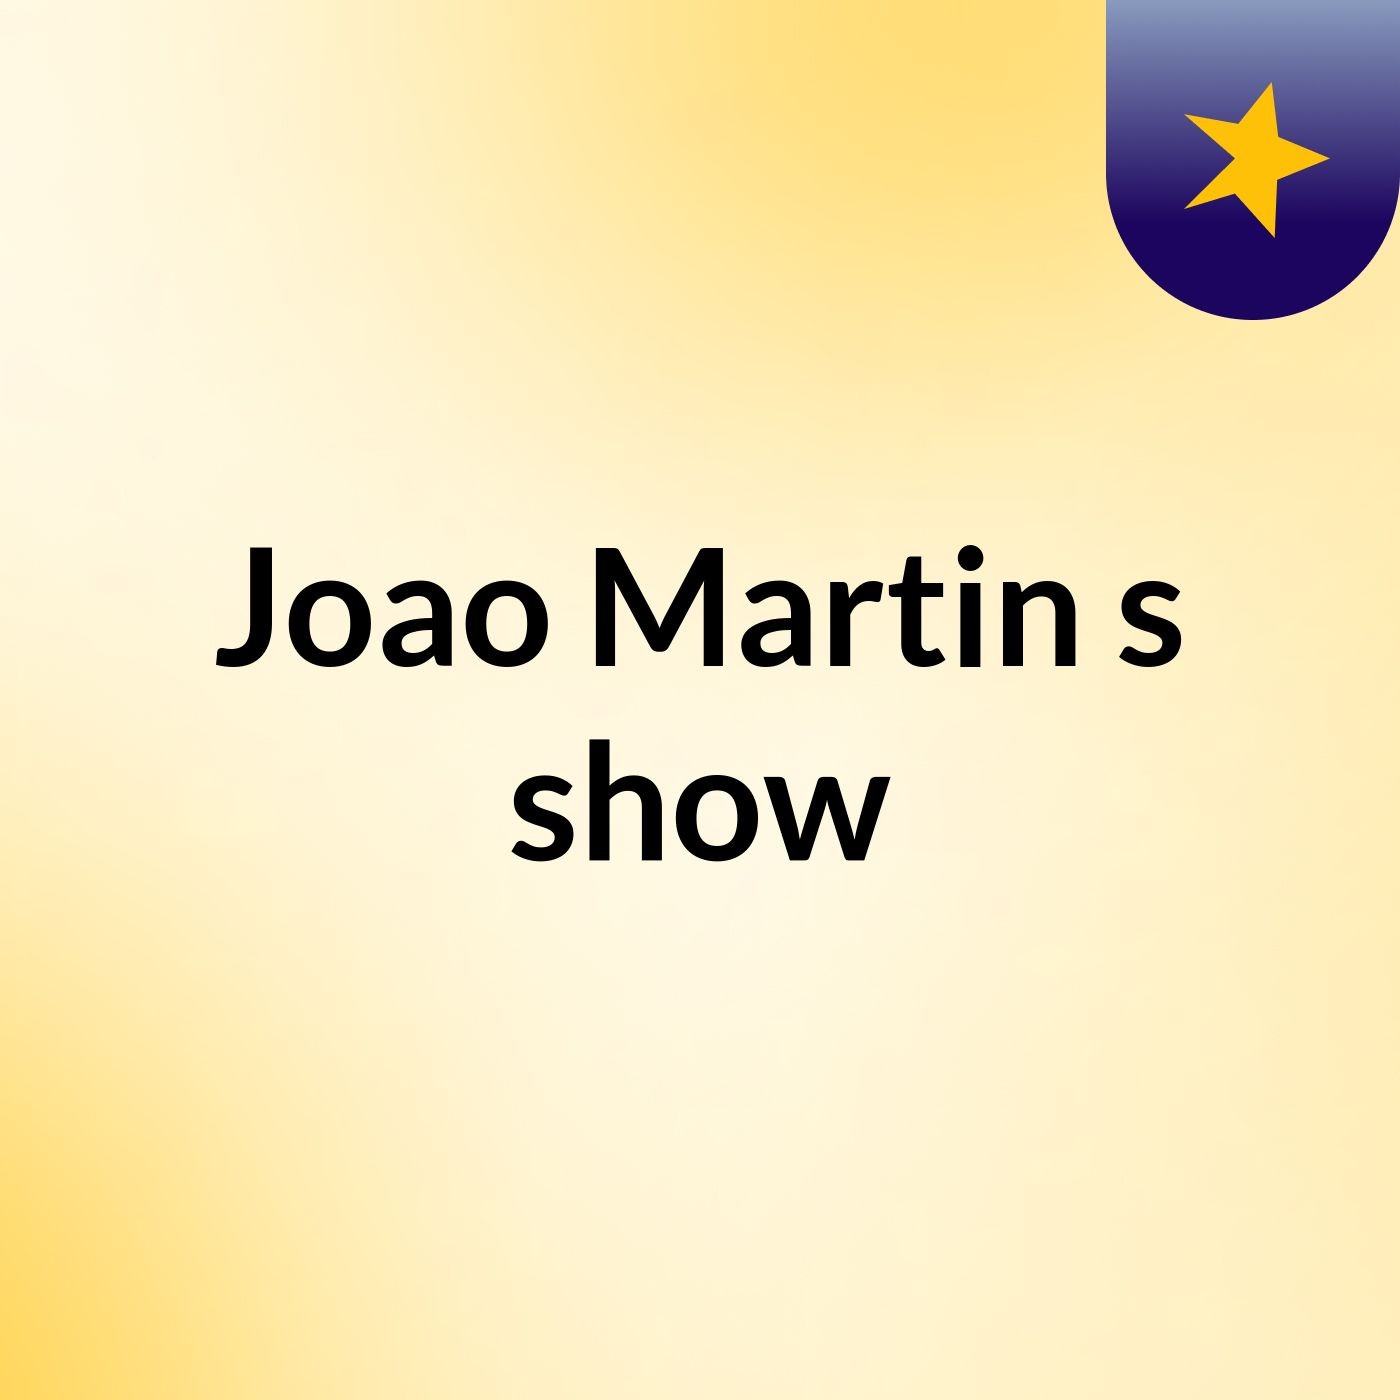 Joao Martin's show